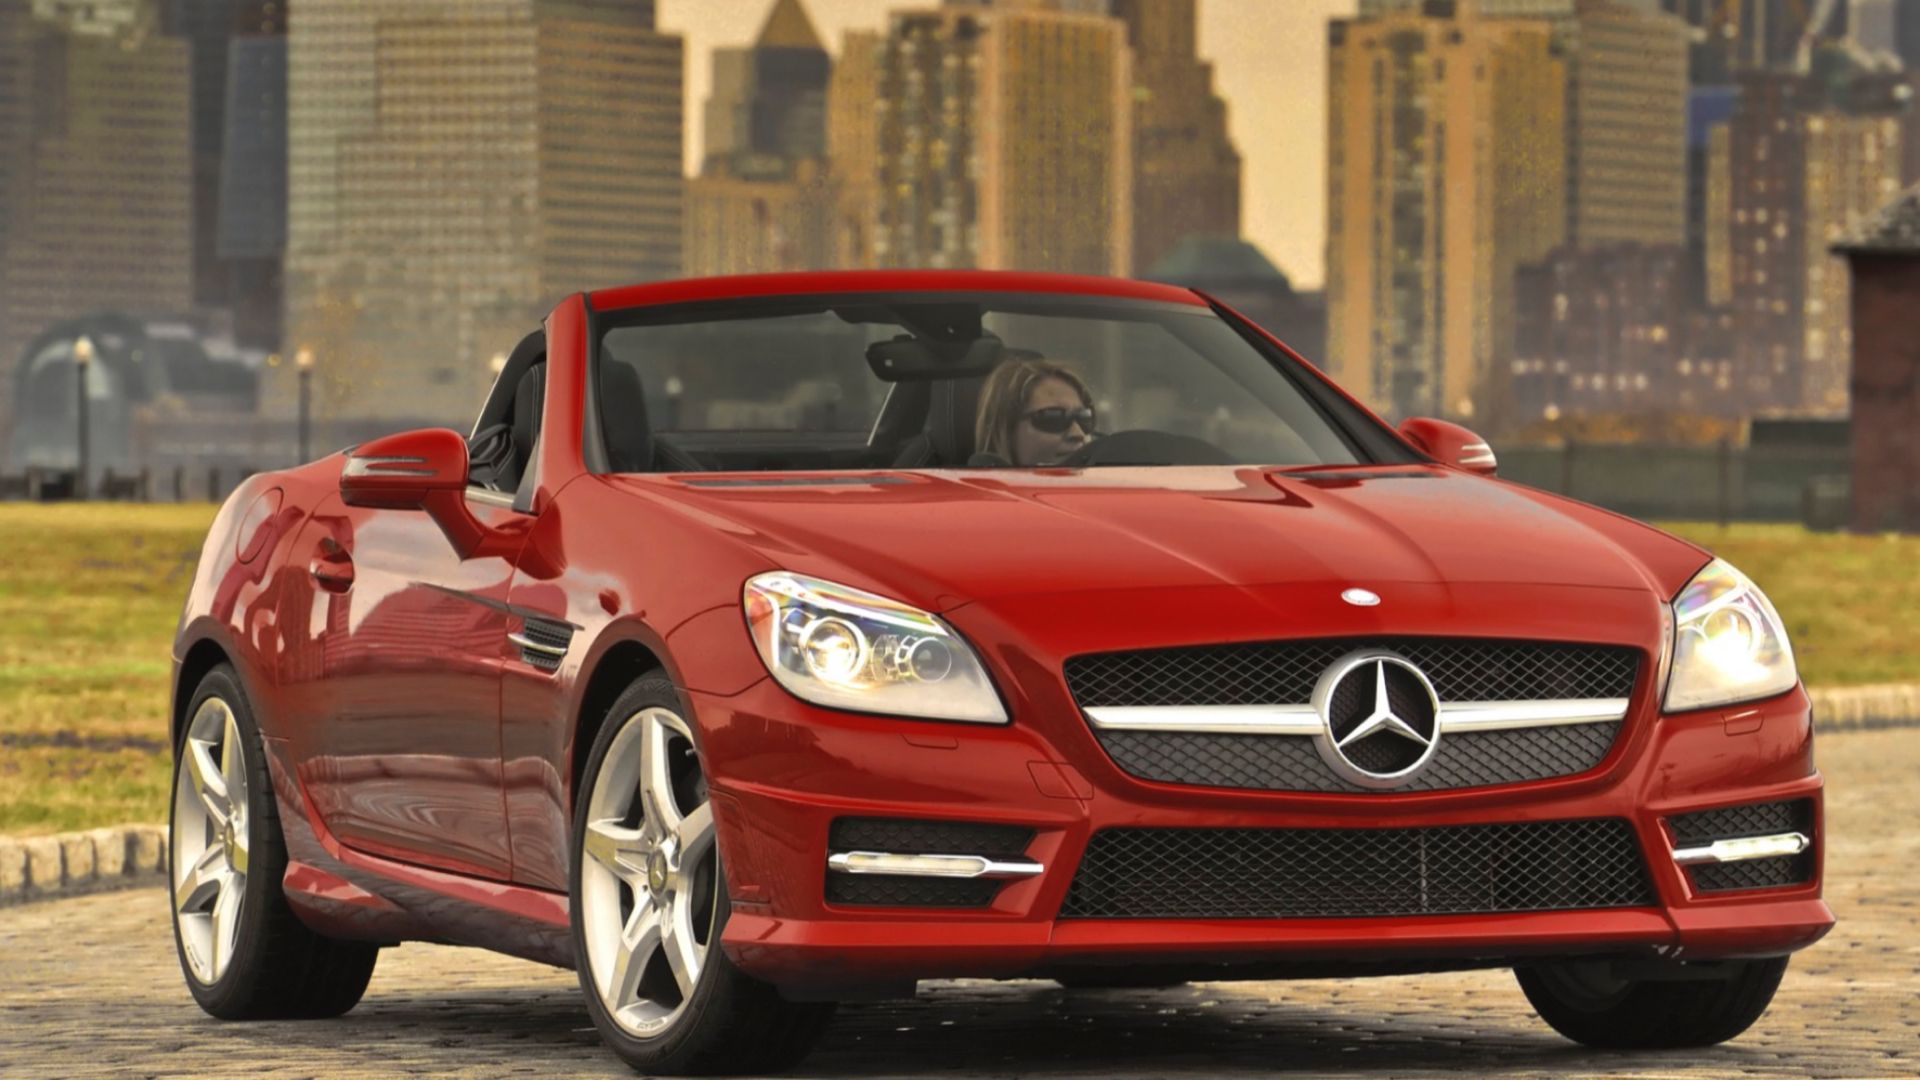 2016 Mercedes-Benz SLK in red posing in front of city scene